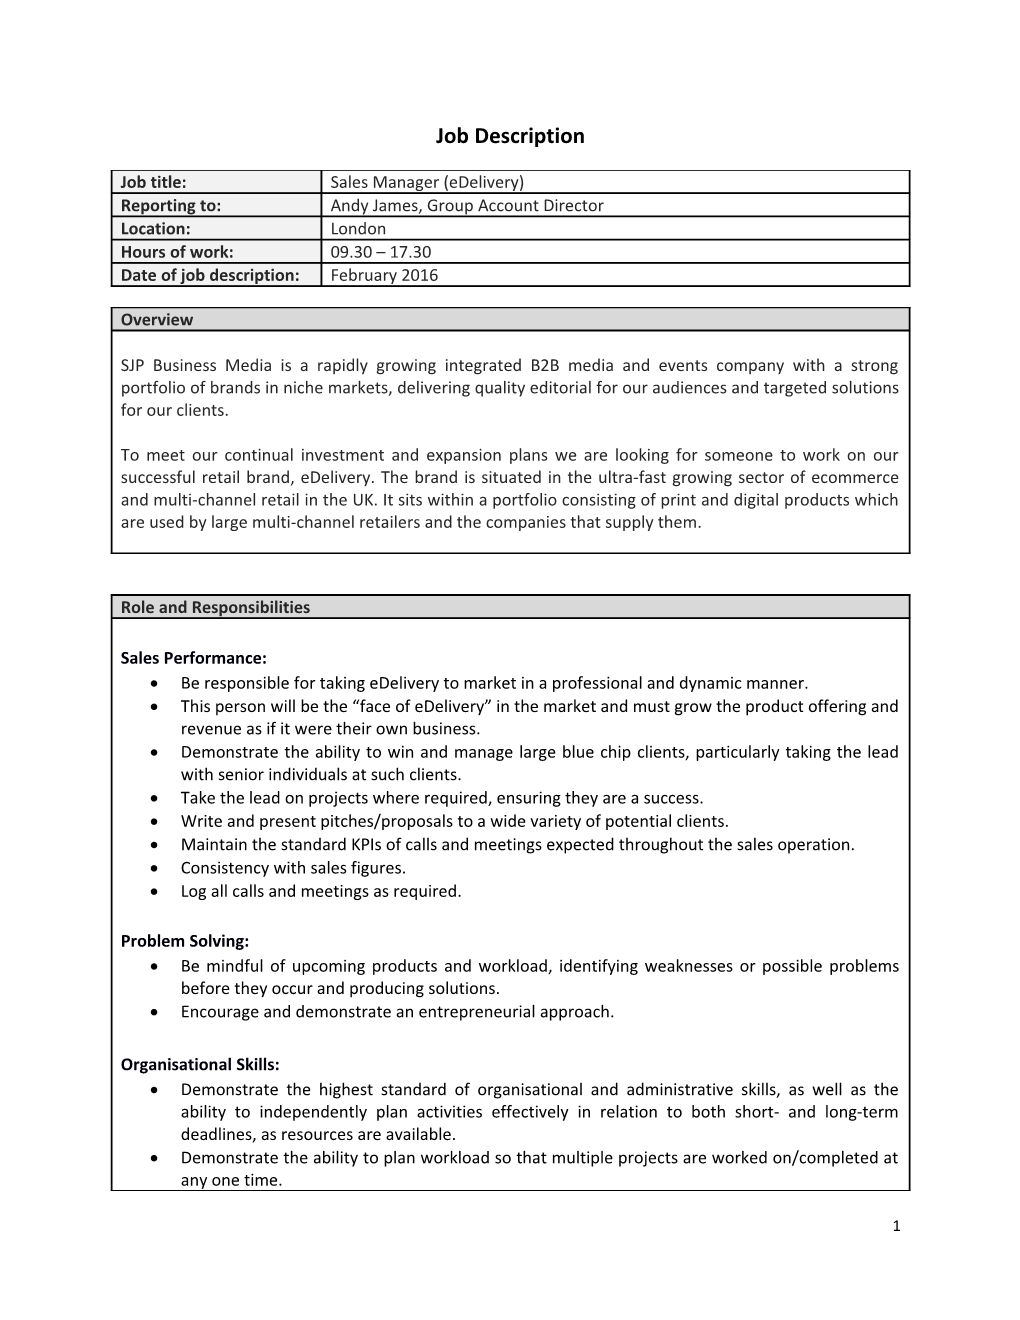 Job Description Form s9